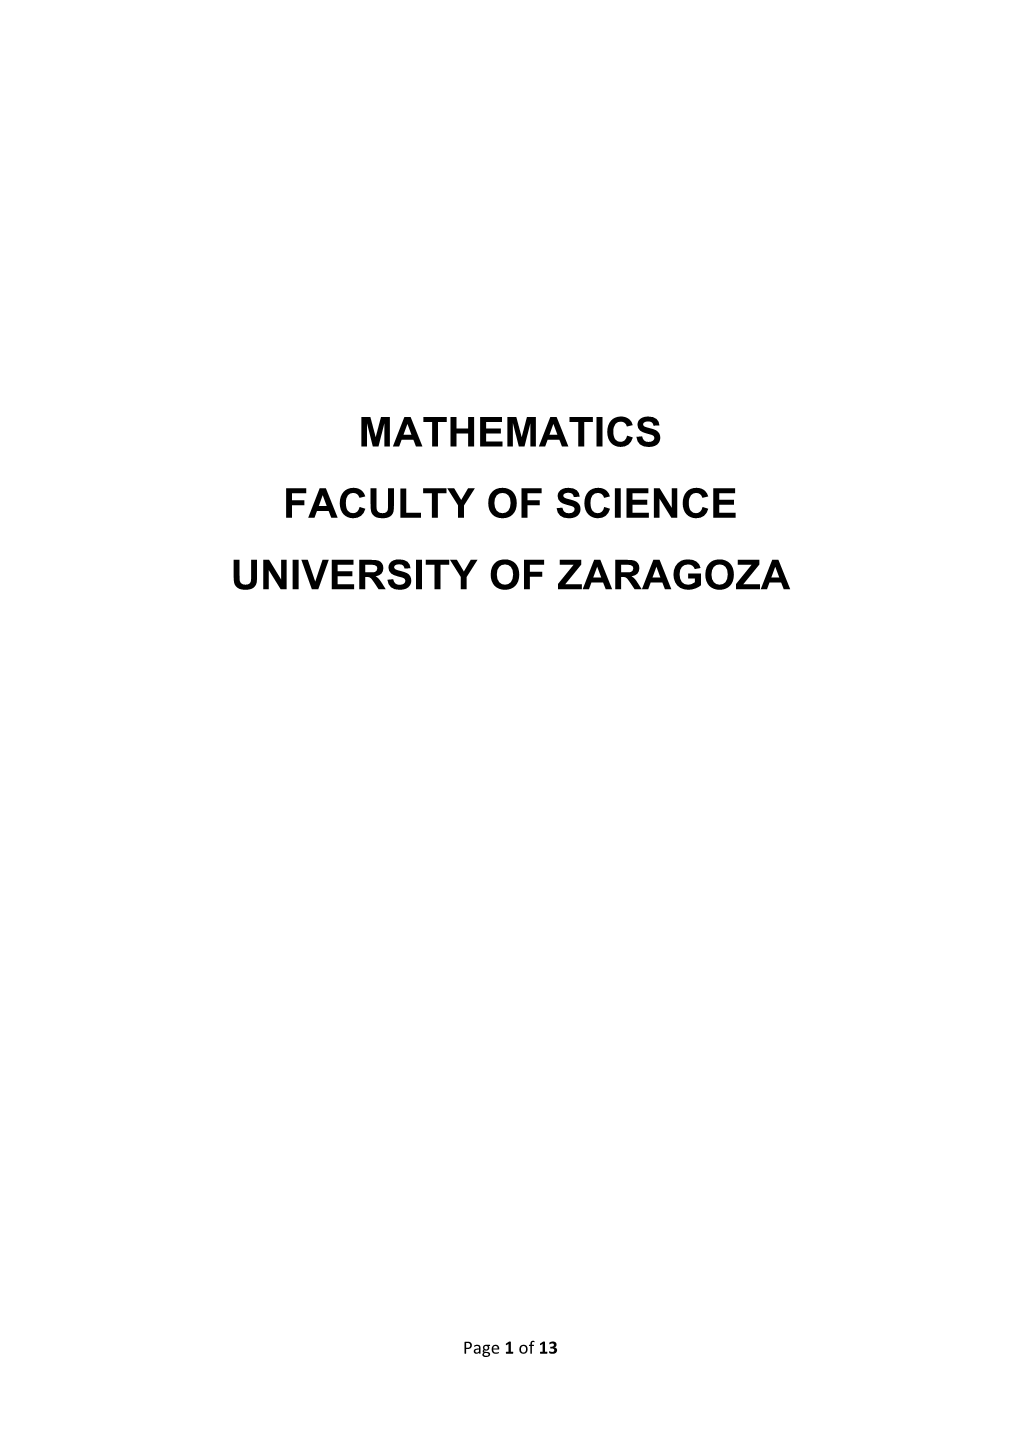 Mathematics Faculty of Science University of Zaragoza